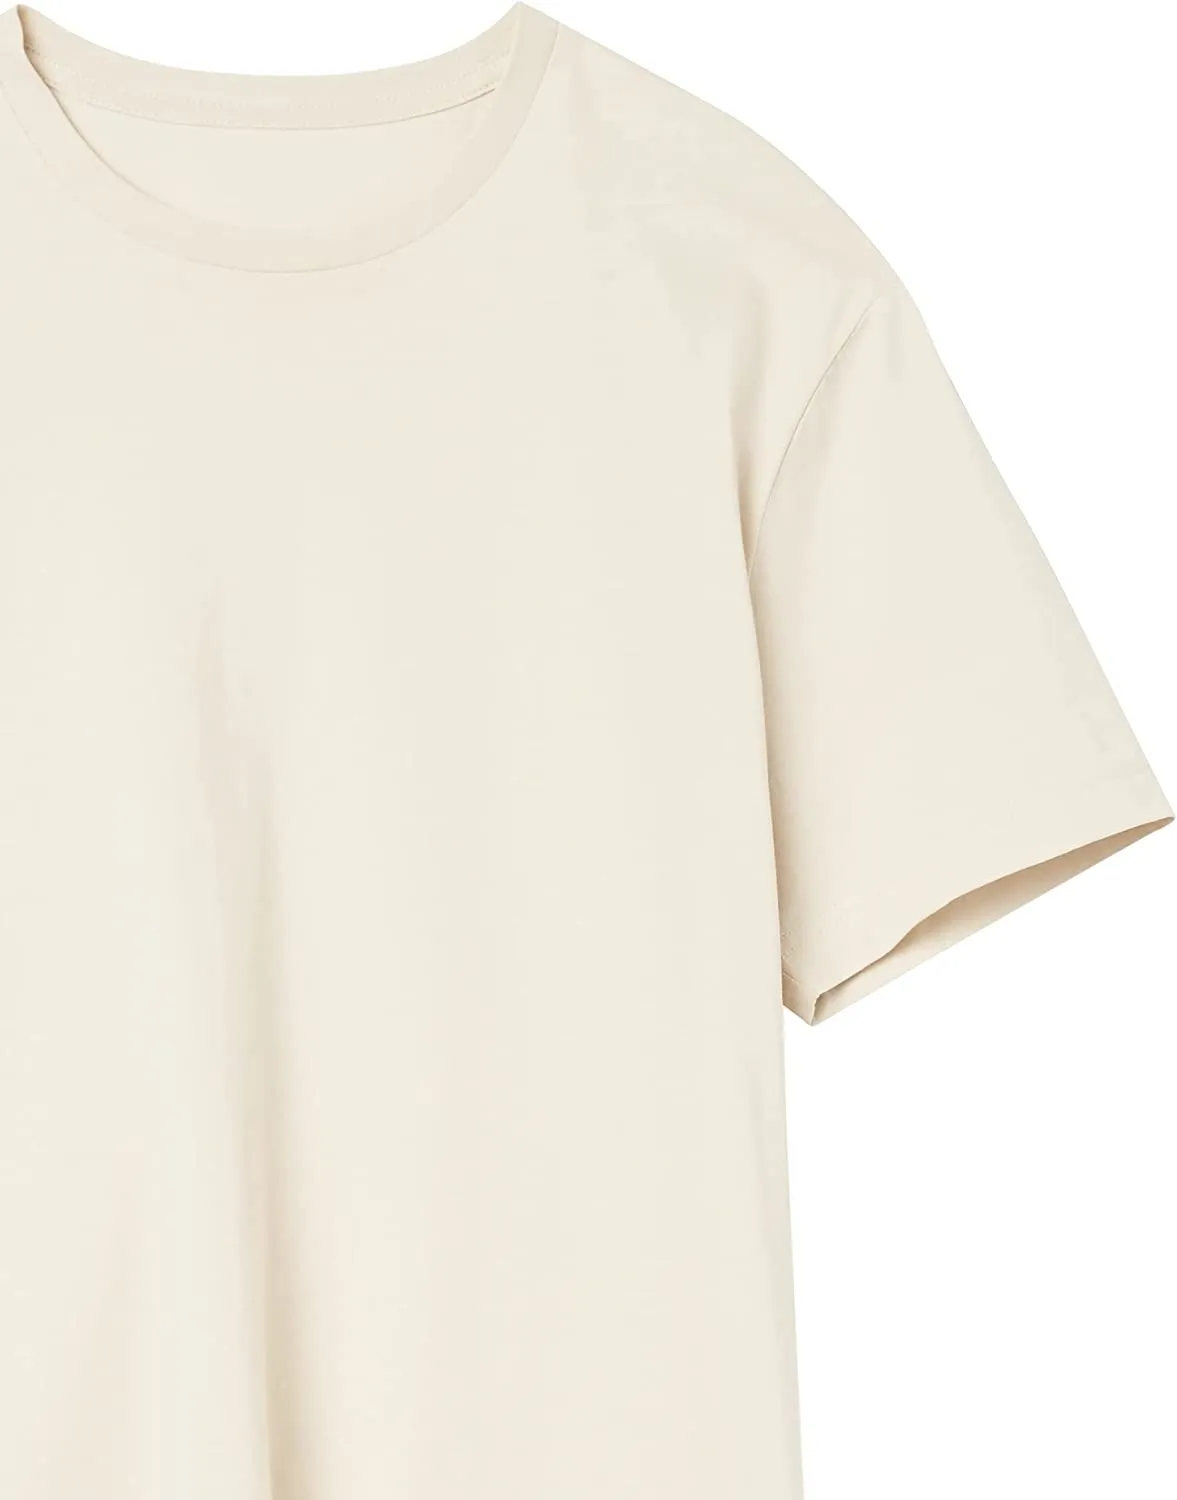 Camiseta de algodão bordada, camiseta personalizada de algodão com estampa de bufante, bordada, de alta qualidade